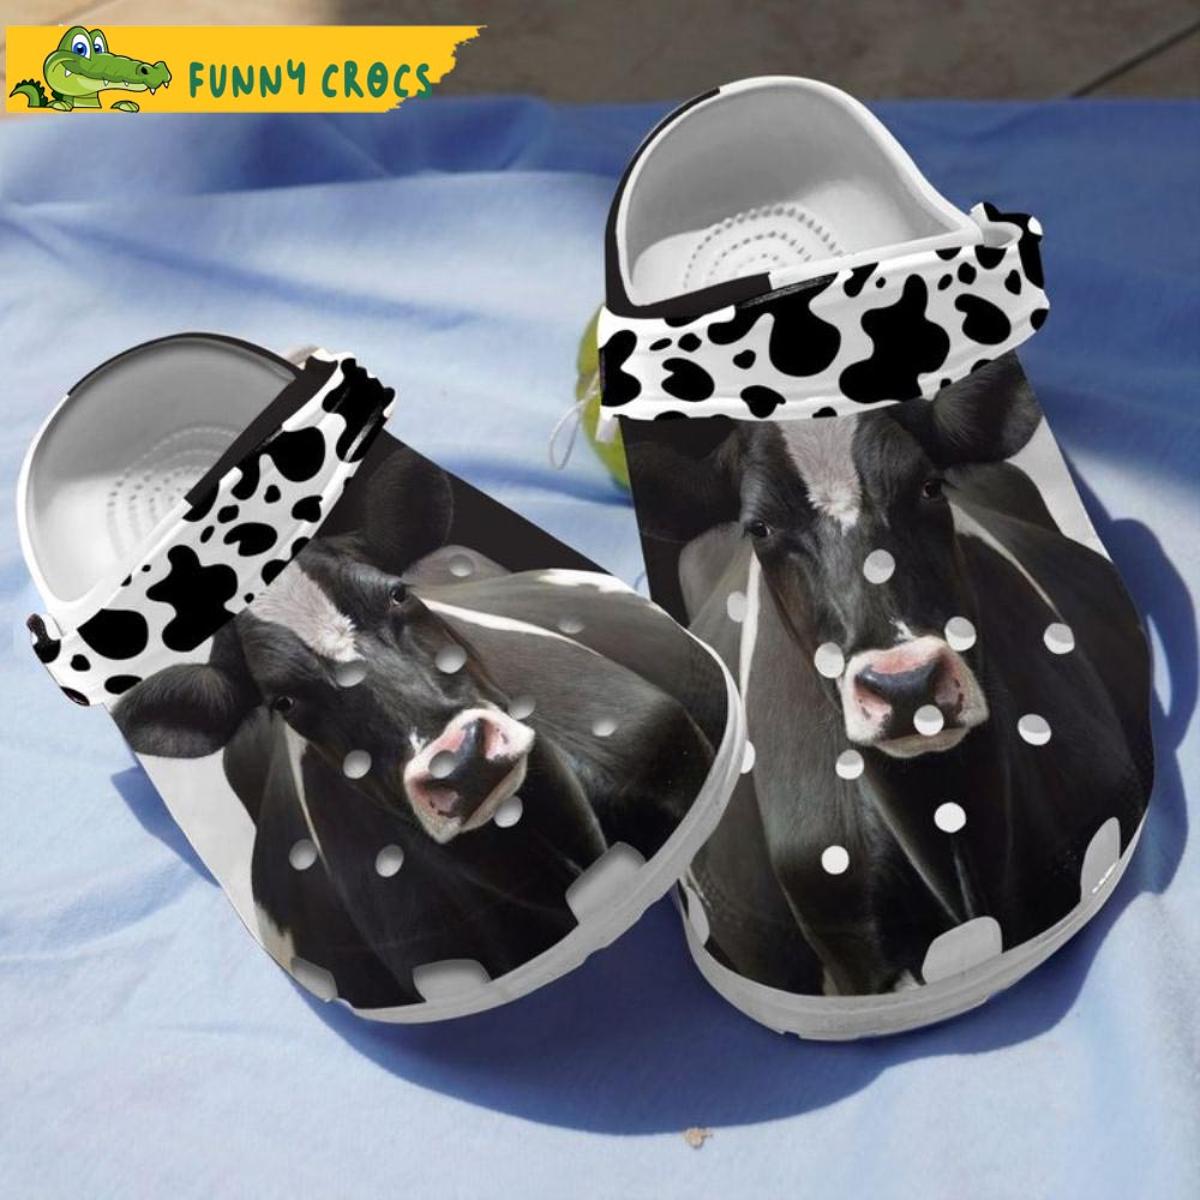 Farmer Crazy Cow Flower Crocs Clog Shoes